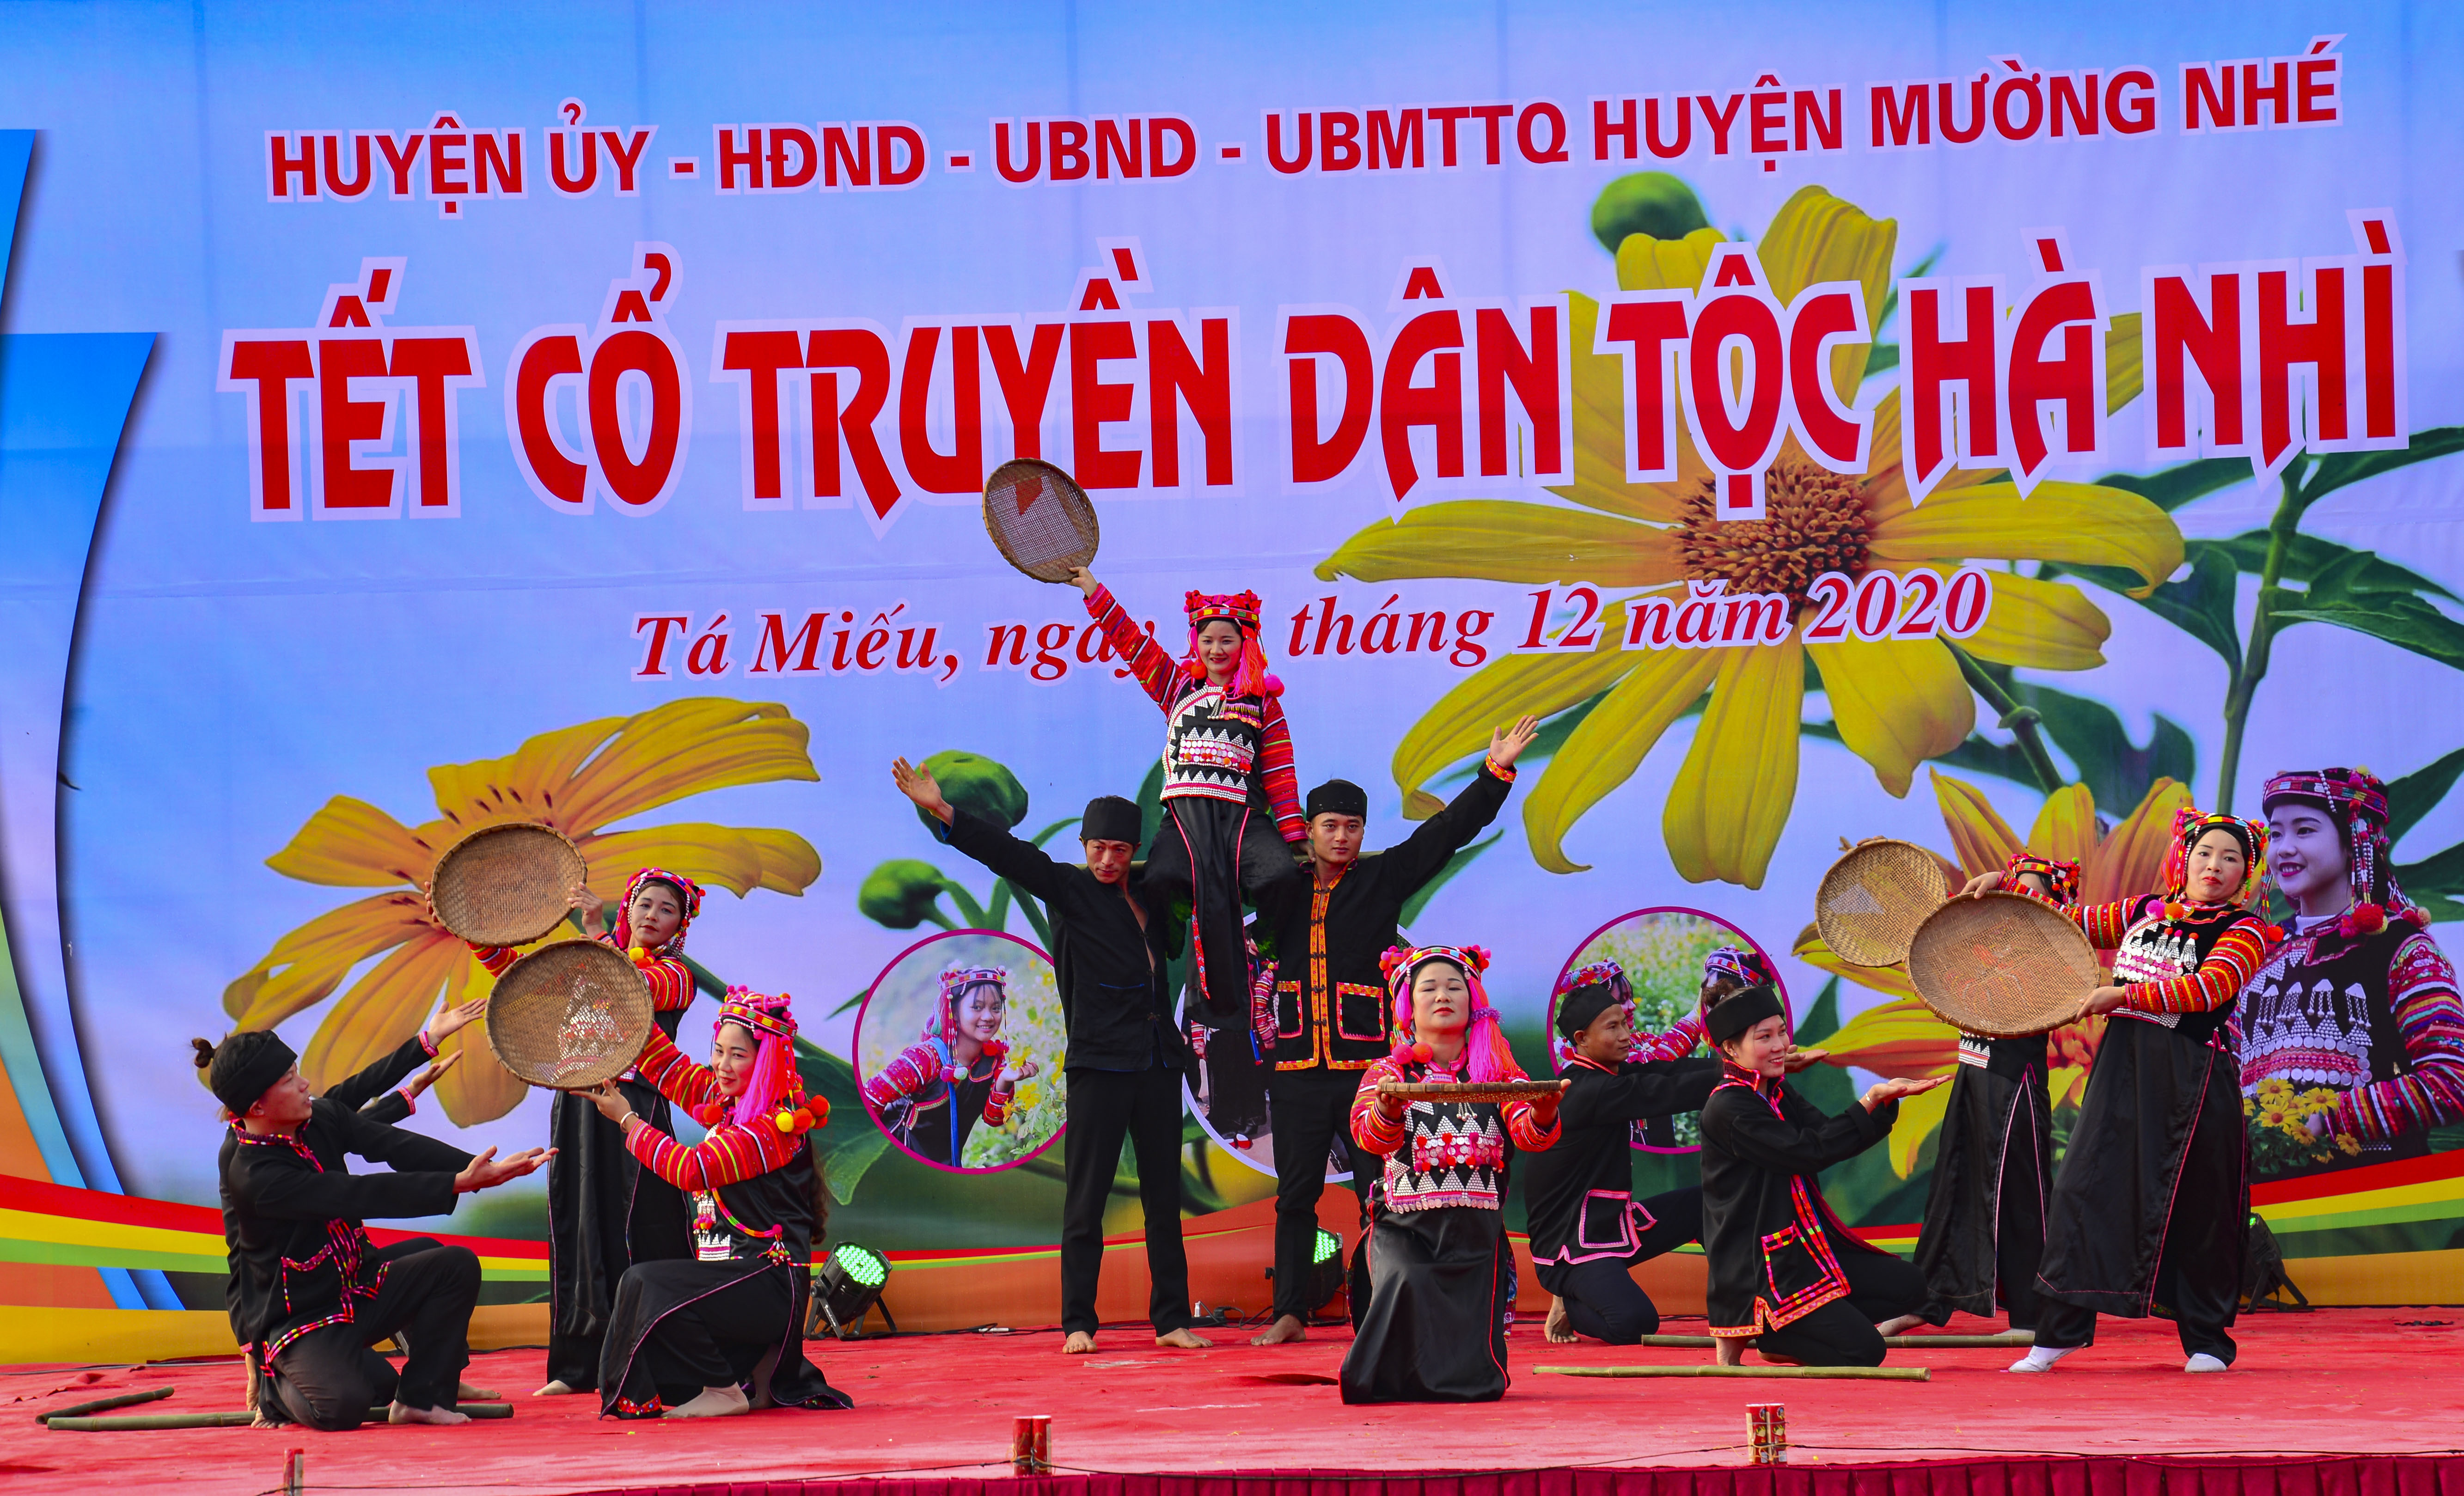 Lần đầu tiên, huyện Mường Nhé tổ chức Lễ hội văn hóa Tết dân tộc Hà Nhì. 